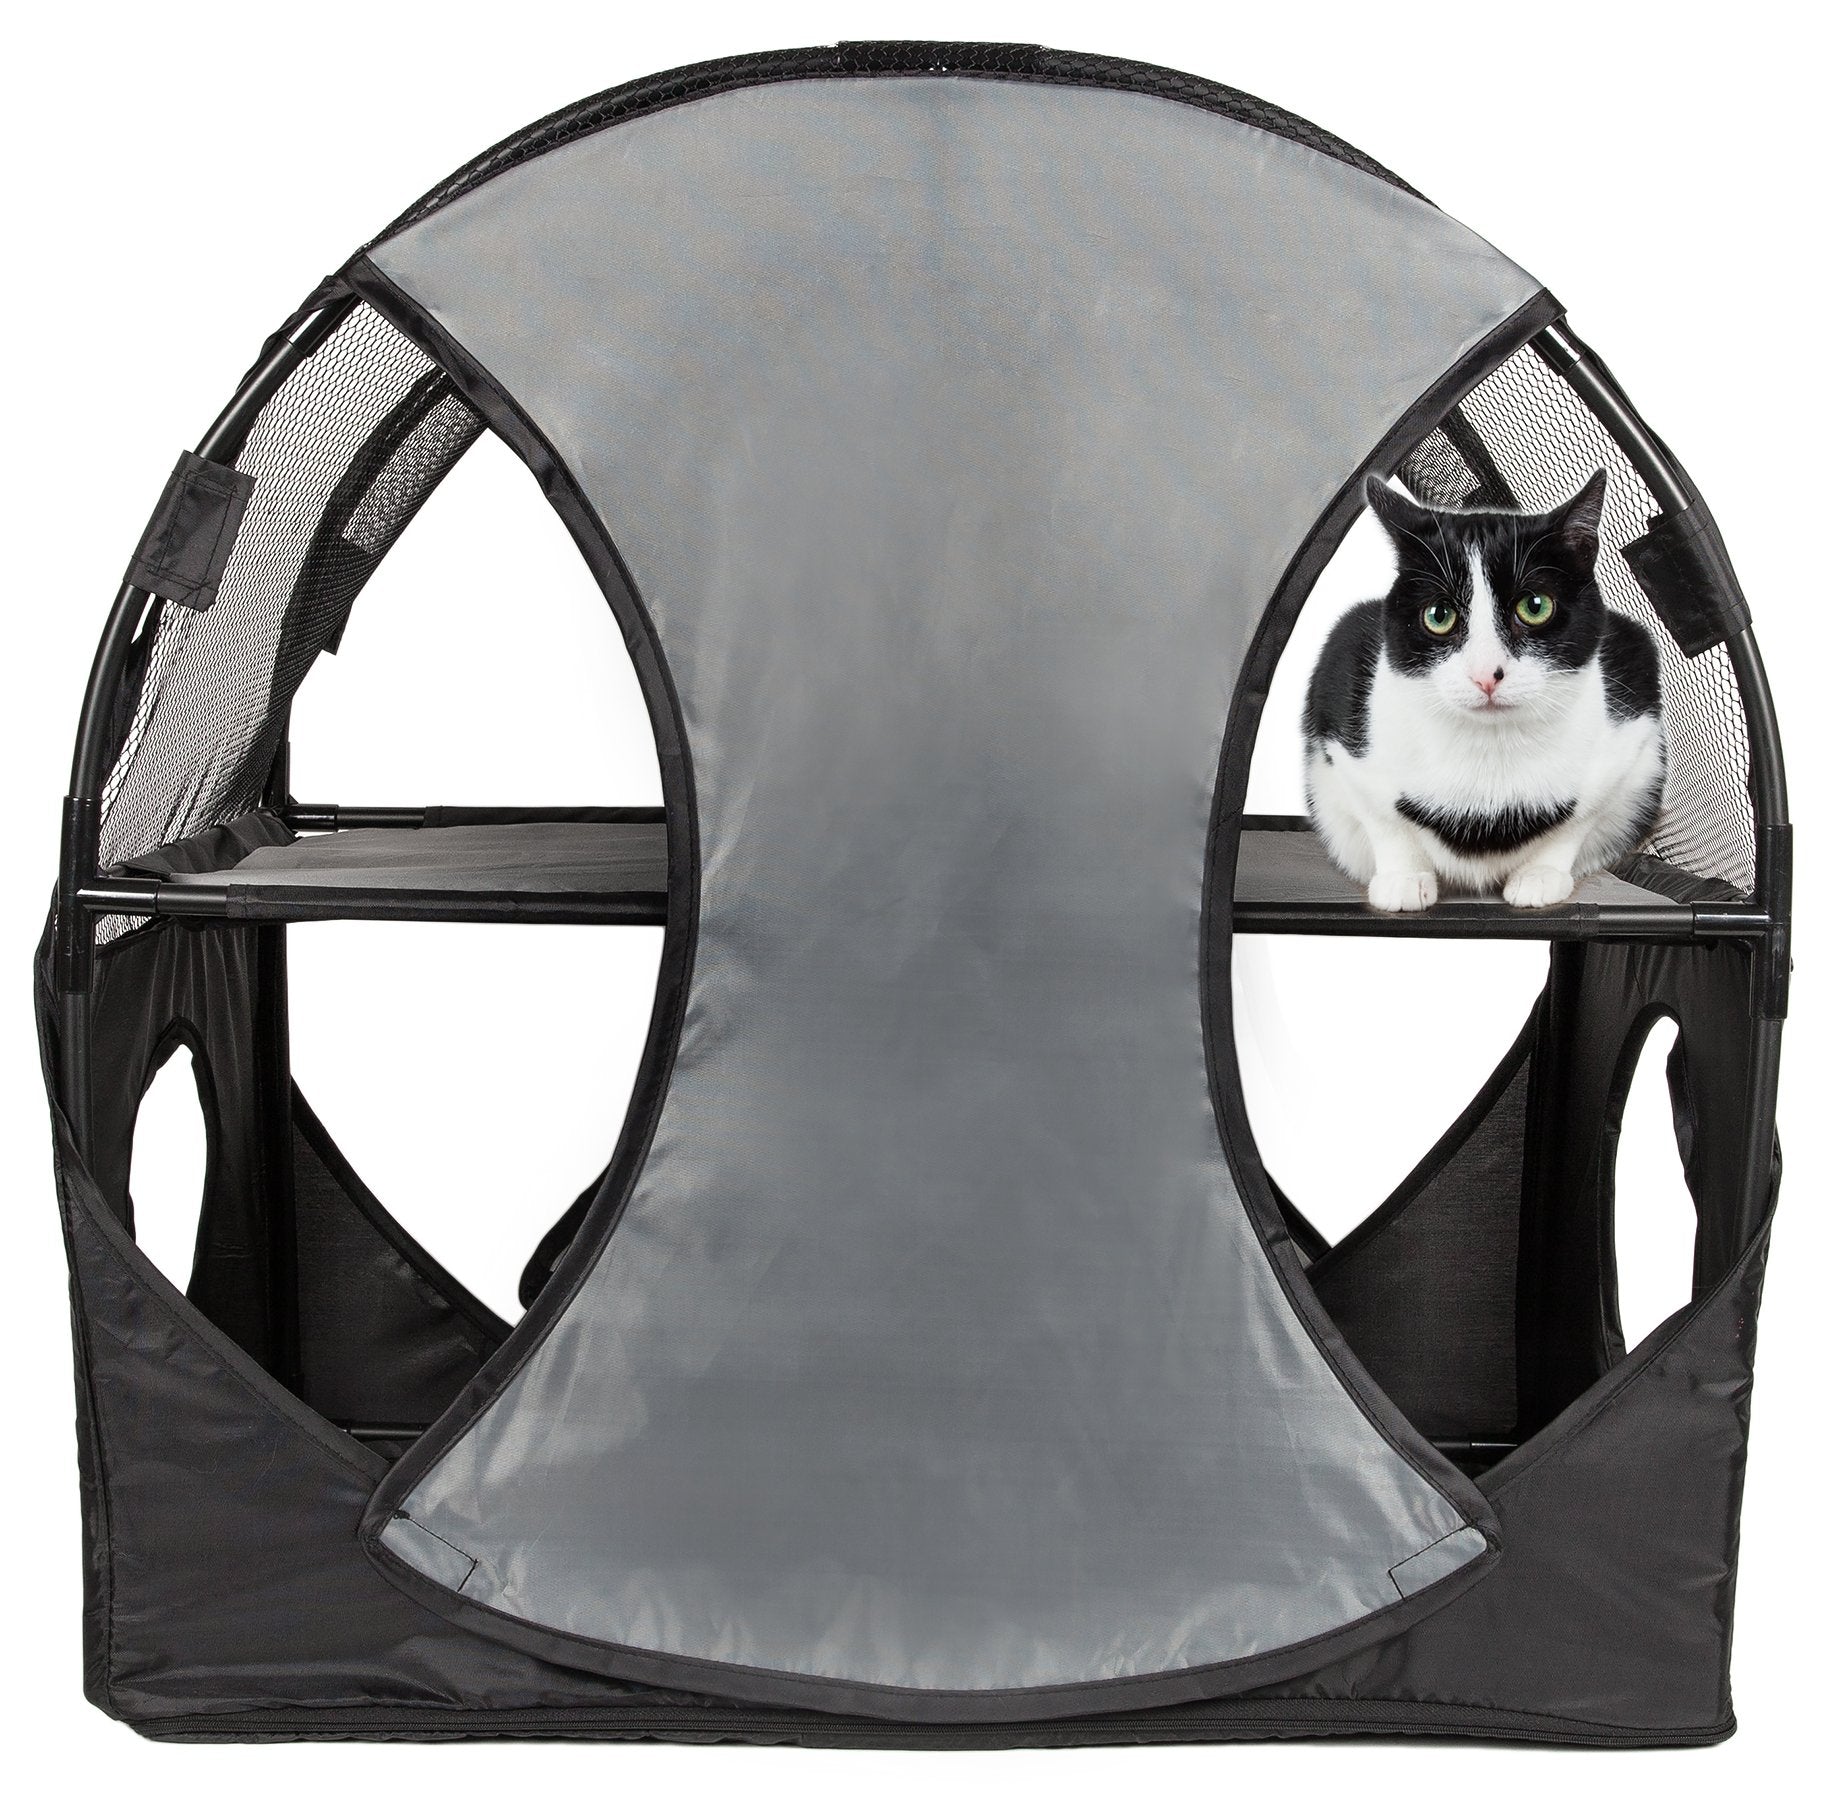 Pet Life Kitty-Play Travel Cat House - Gray